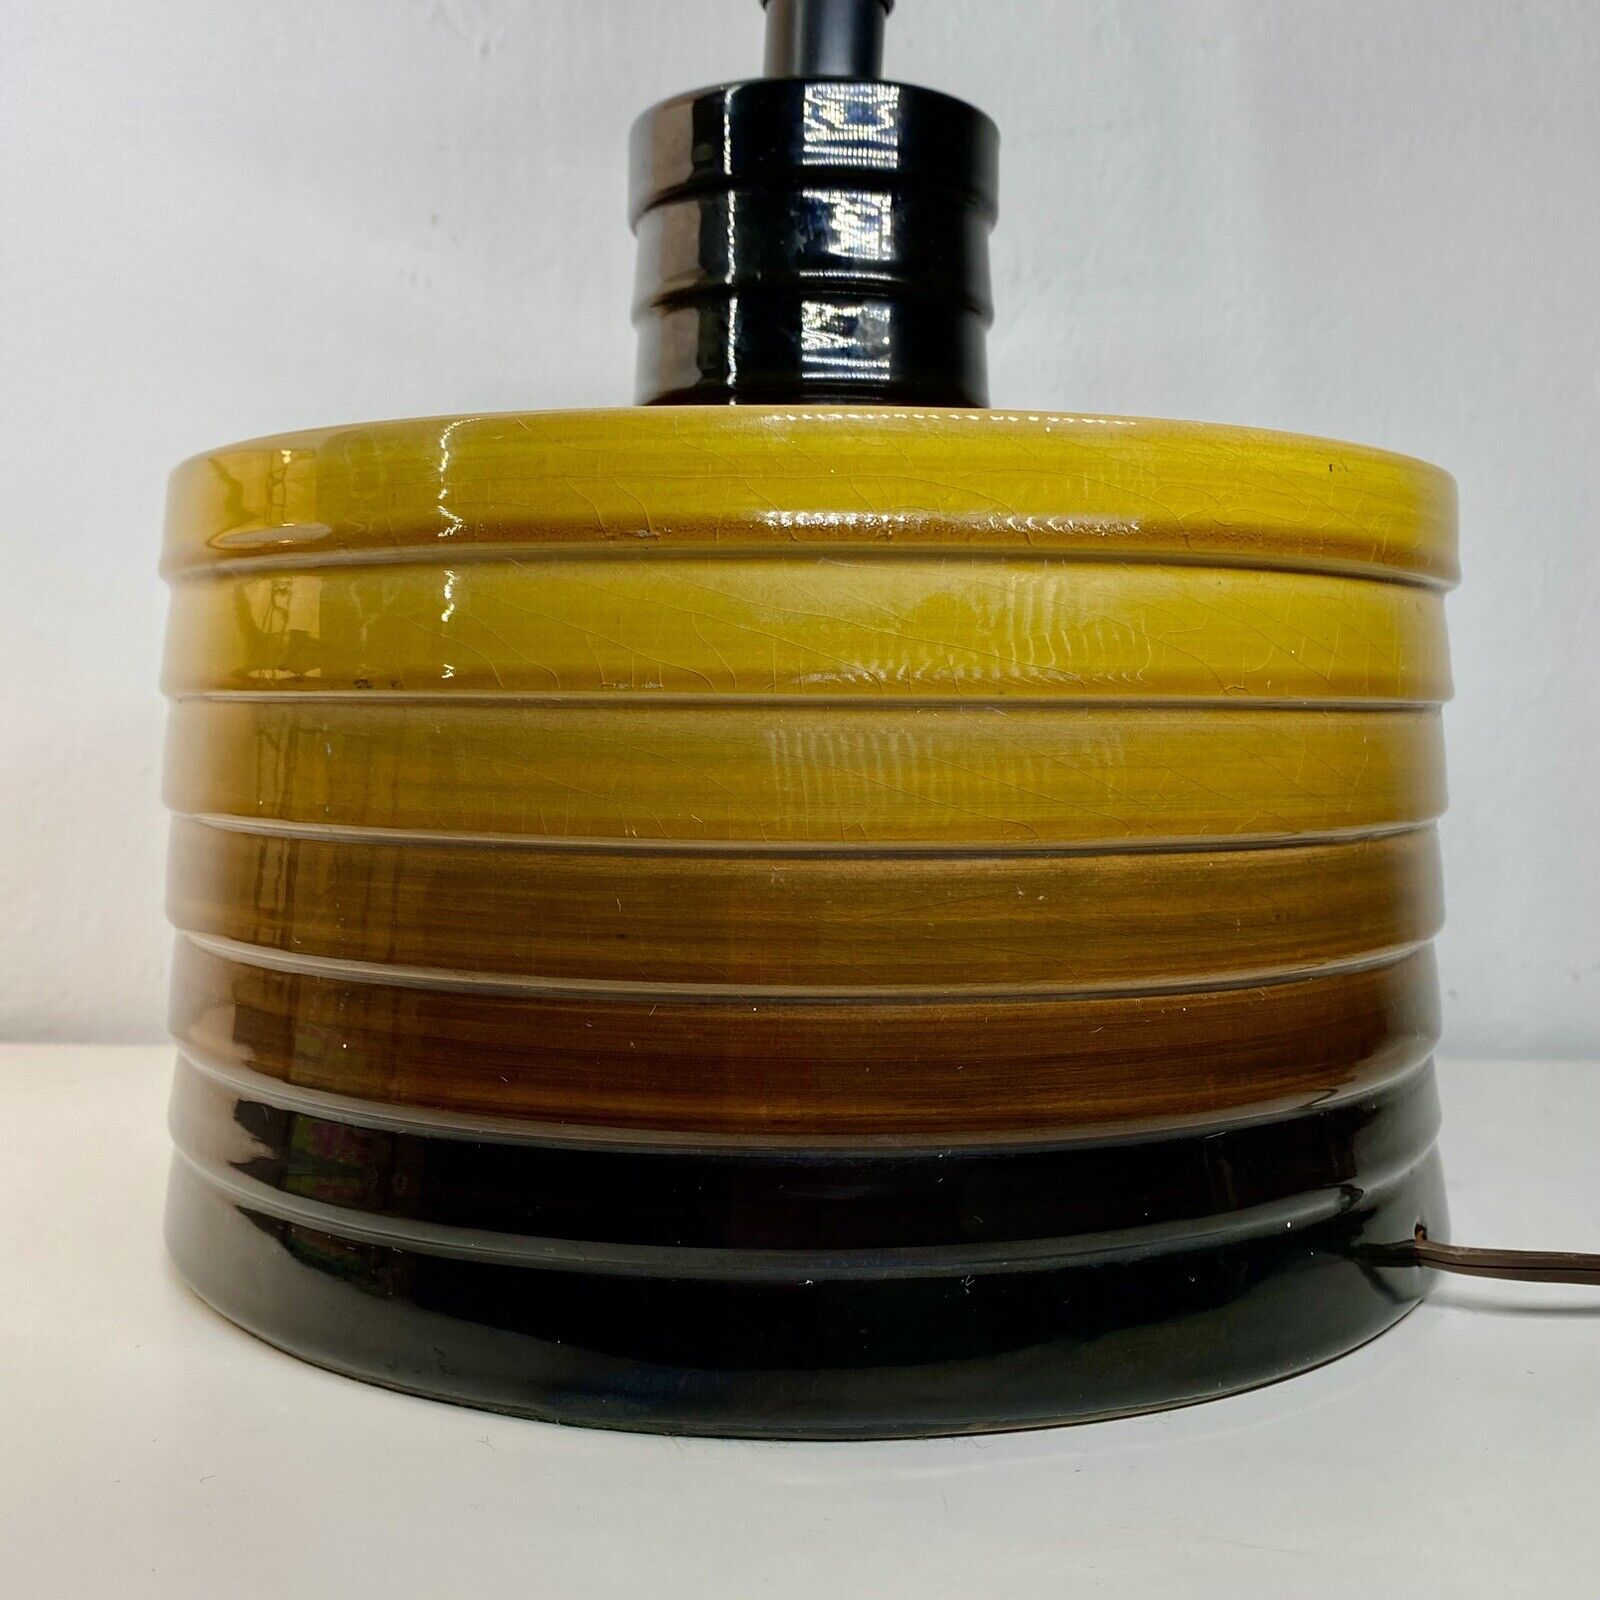 BITOSSI for RAYMOR Table Lamp ALDO LONDI VTG Italian MCM Ceramic 60s -70s Boho